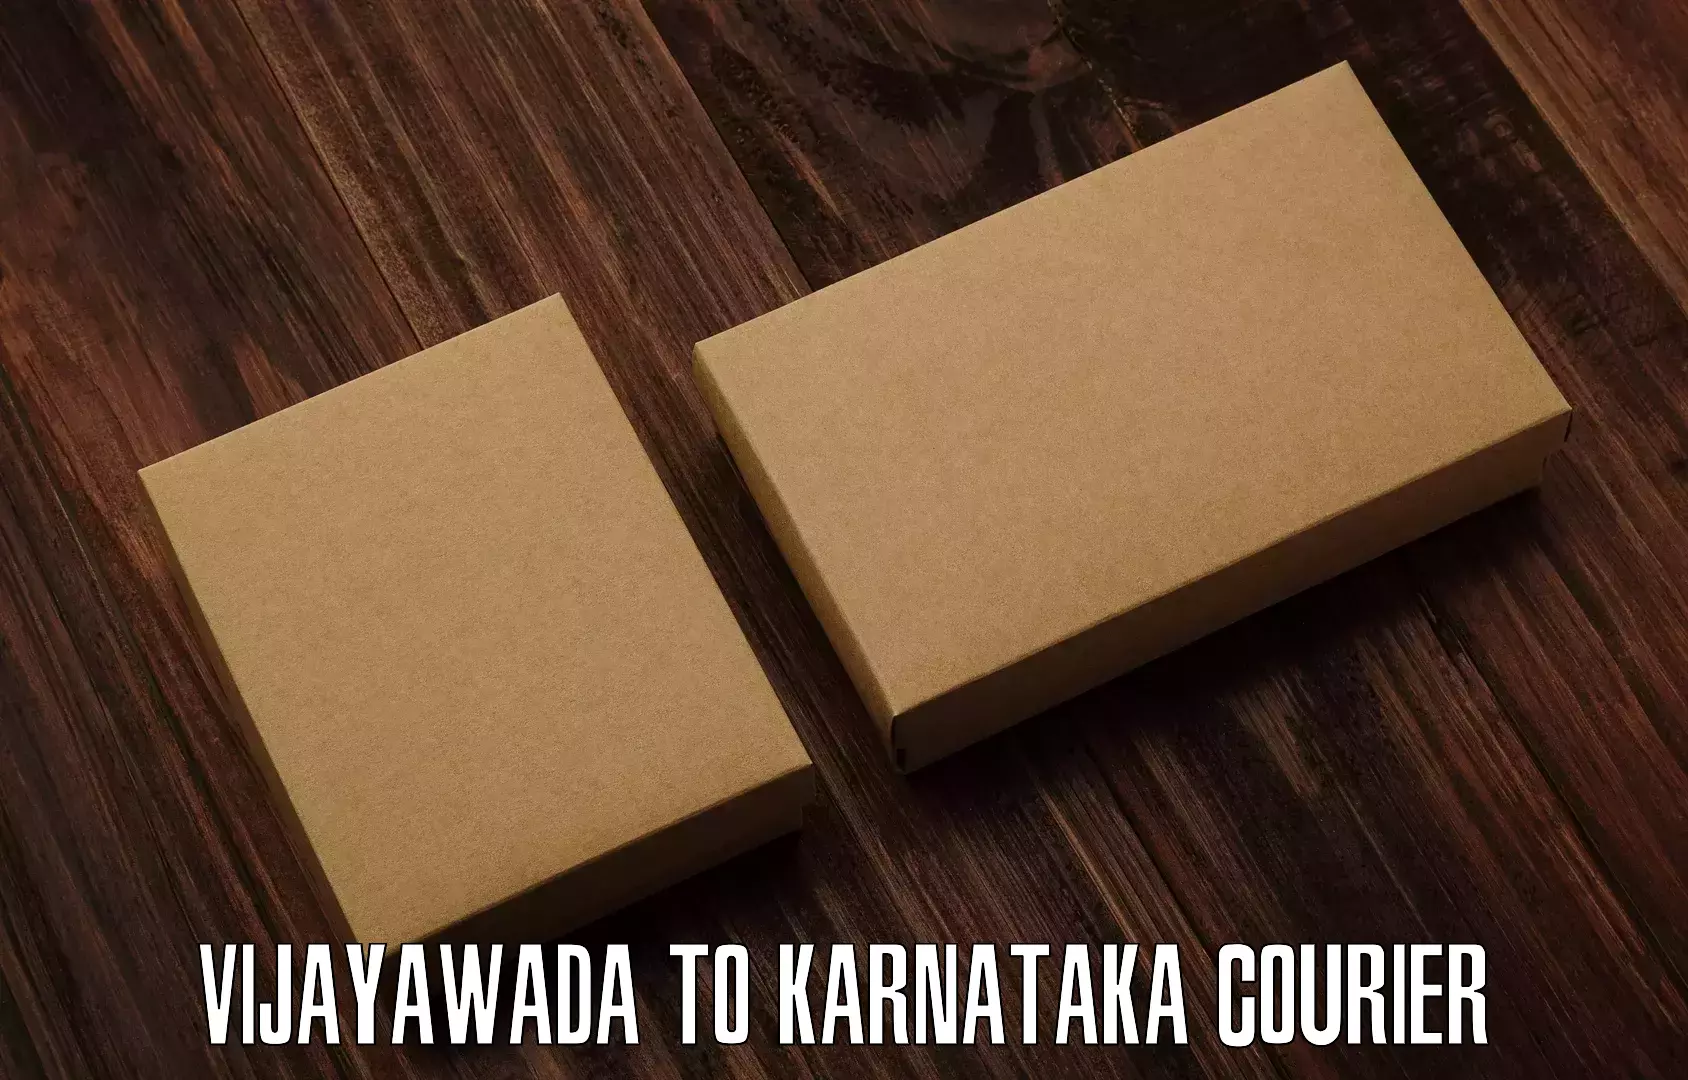 Efficient cargo handling Vijayawada to Karnataka